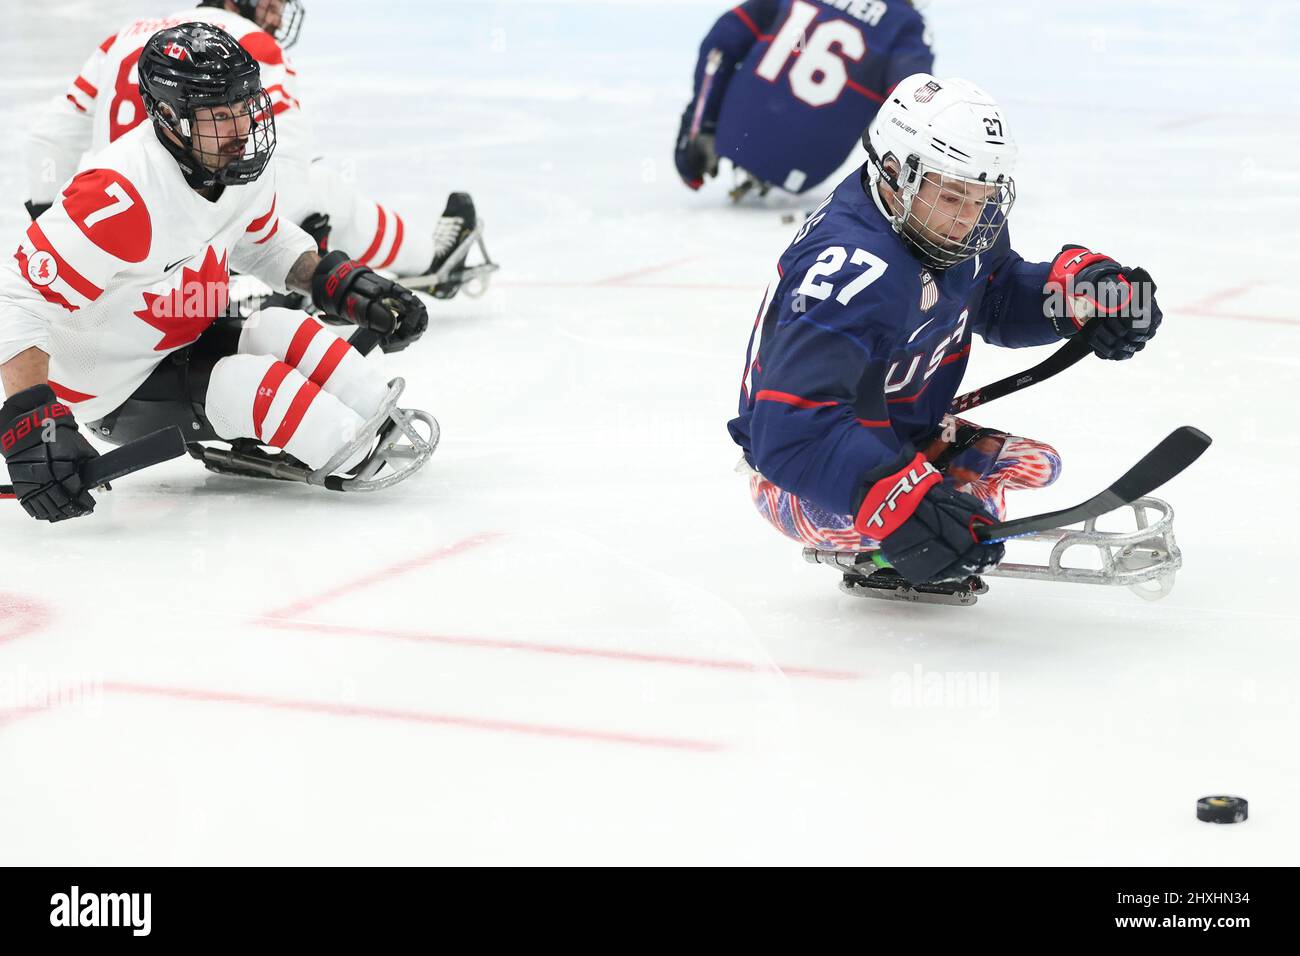 Josh Pauls named US Para ice hockey team captain